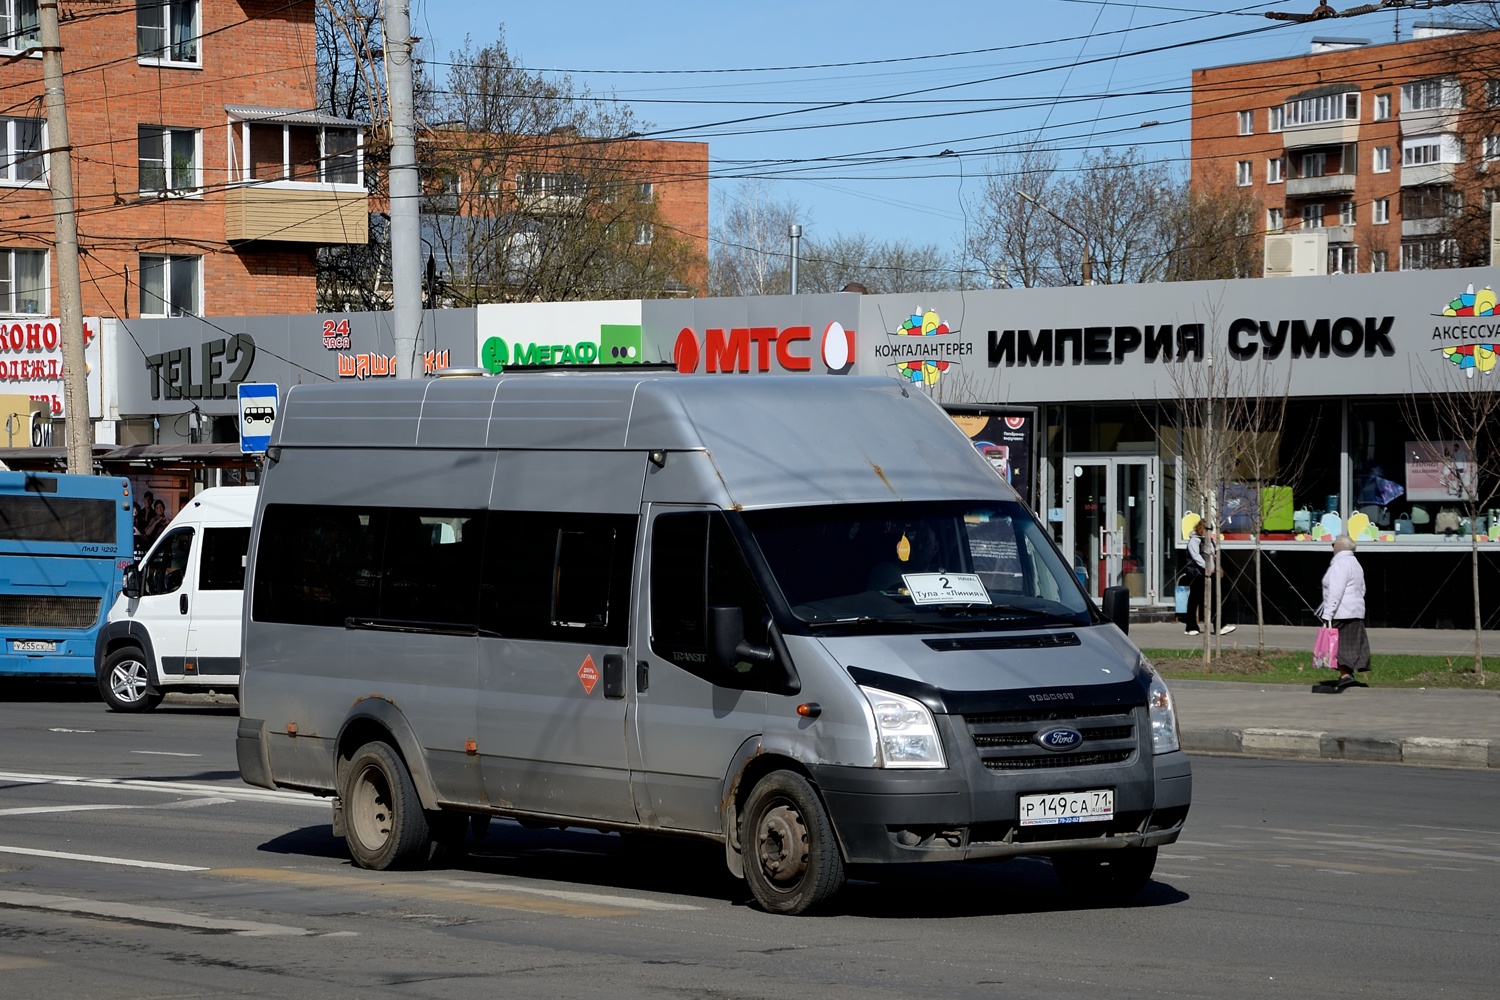 Tula, Nizhegorodets-222709 (Ford Transit) # Р 149 СА 71